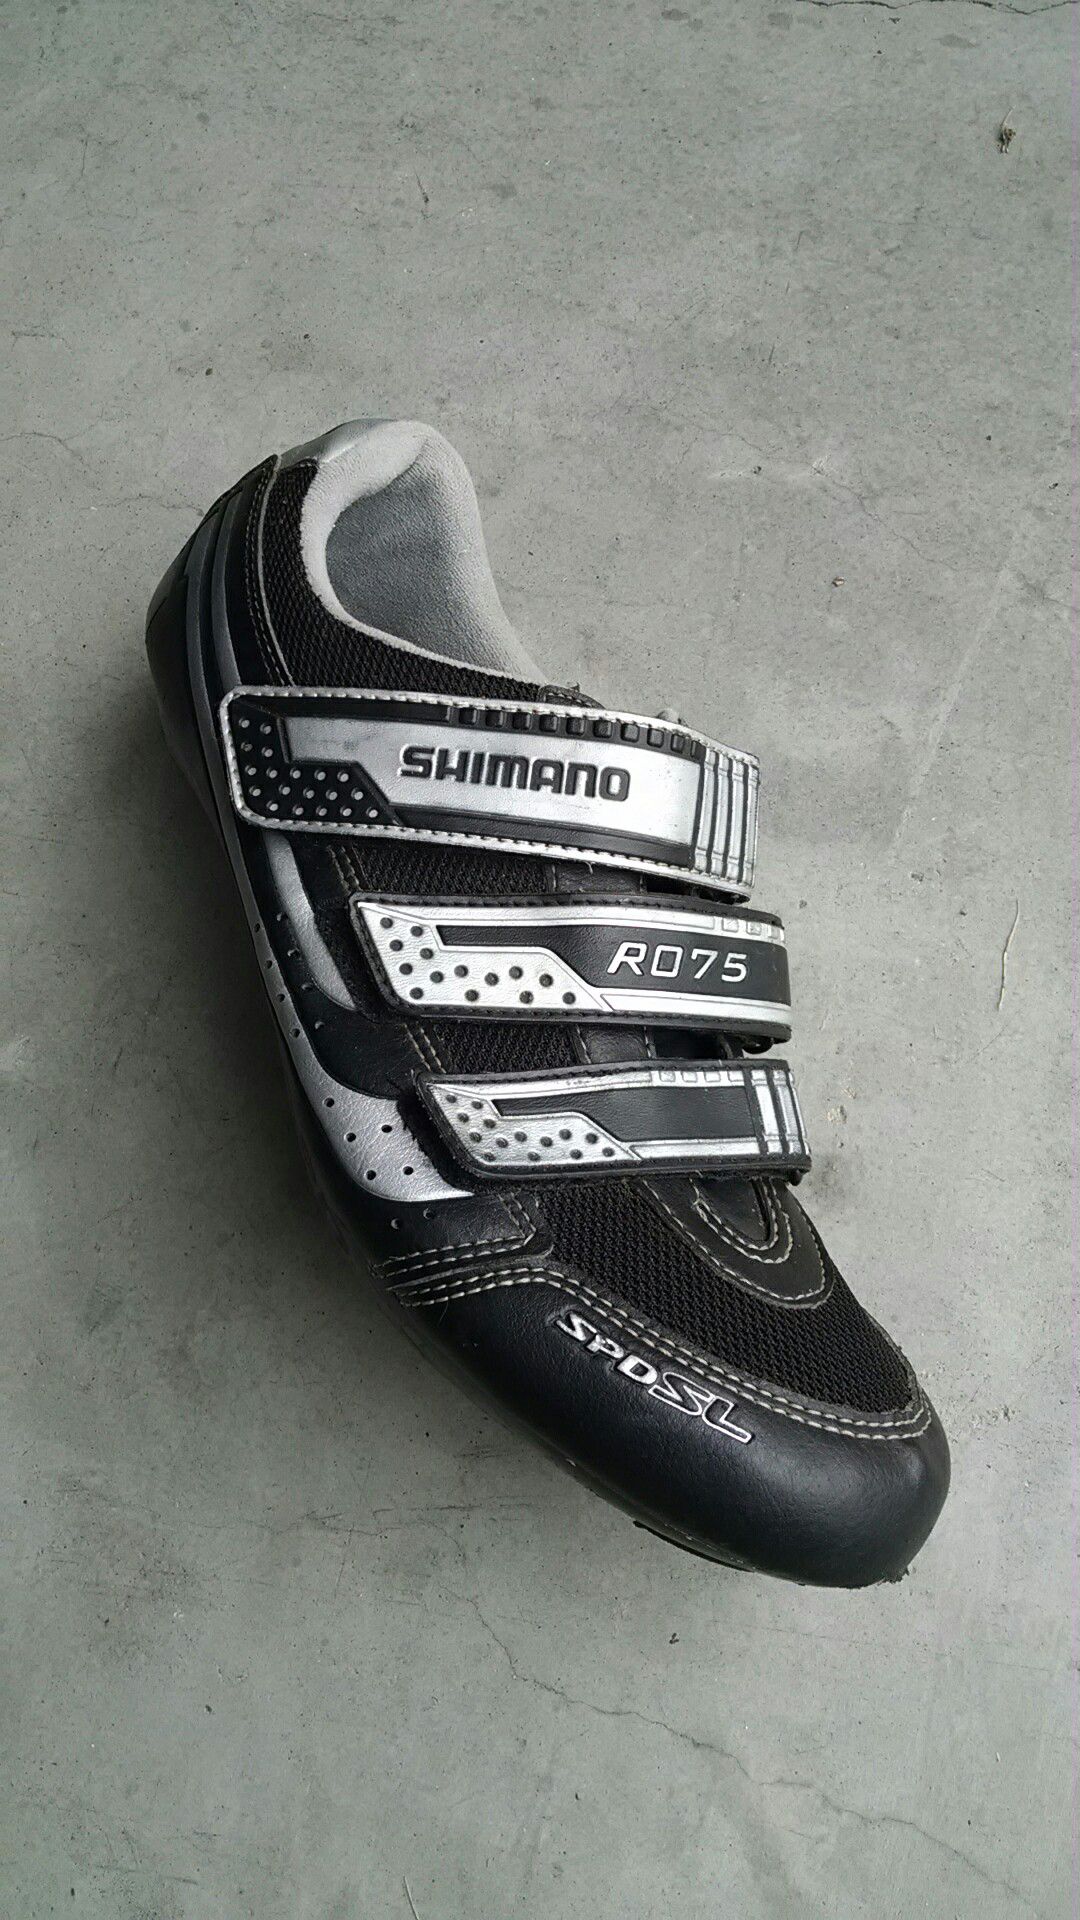 Shimano cycling shoes. Size 12.3 (EU 48).